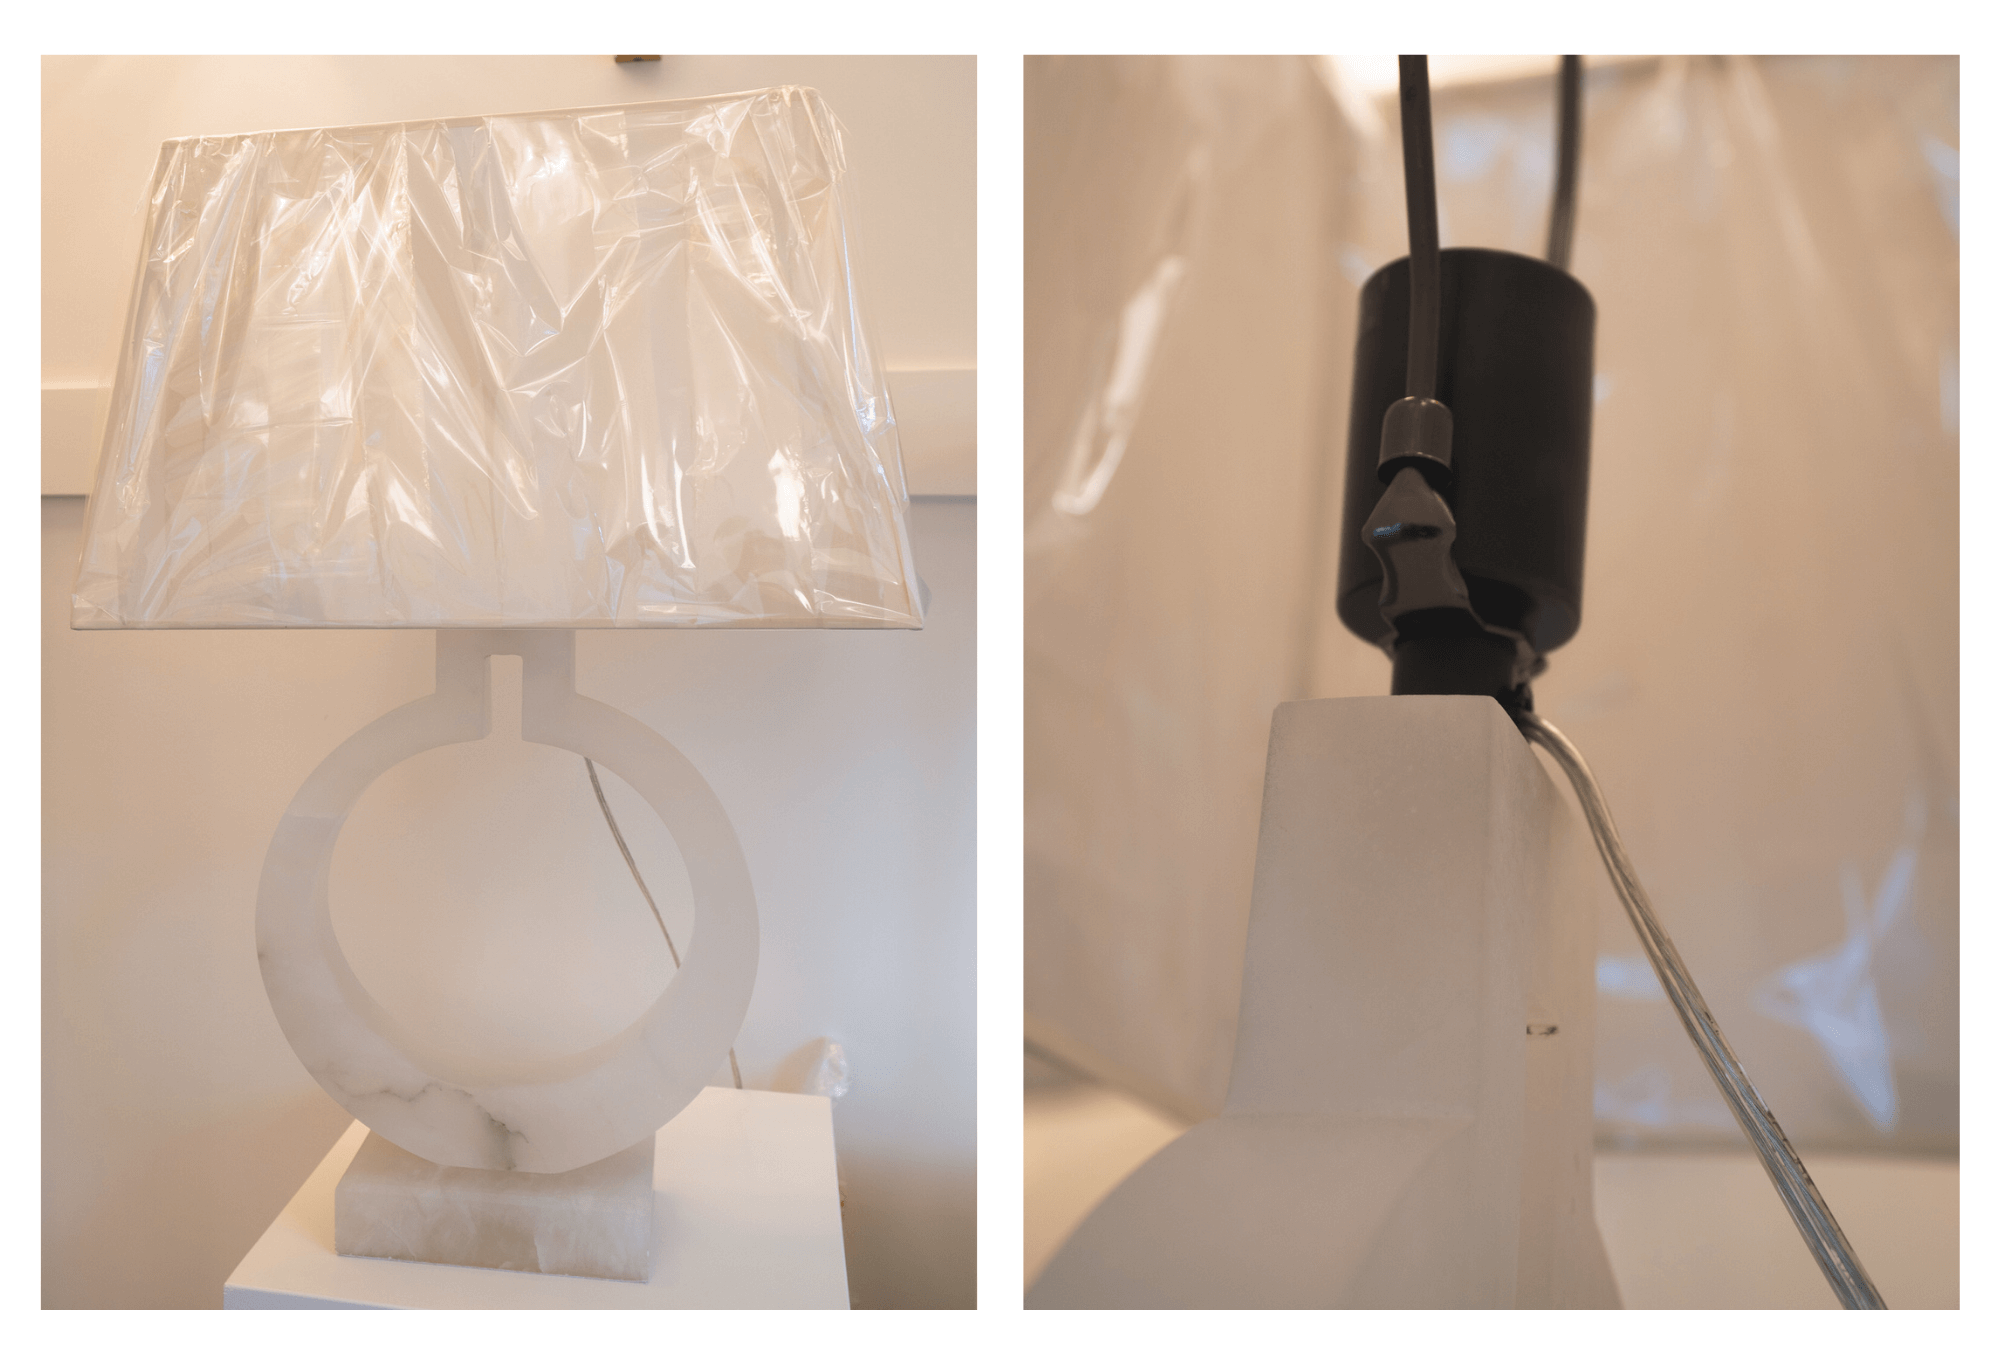 vizuální komfortní tvar prstence stolní lampa